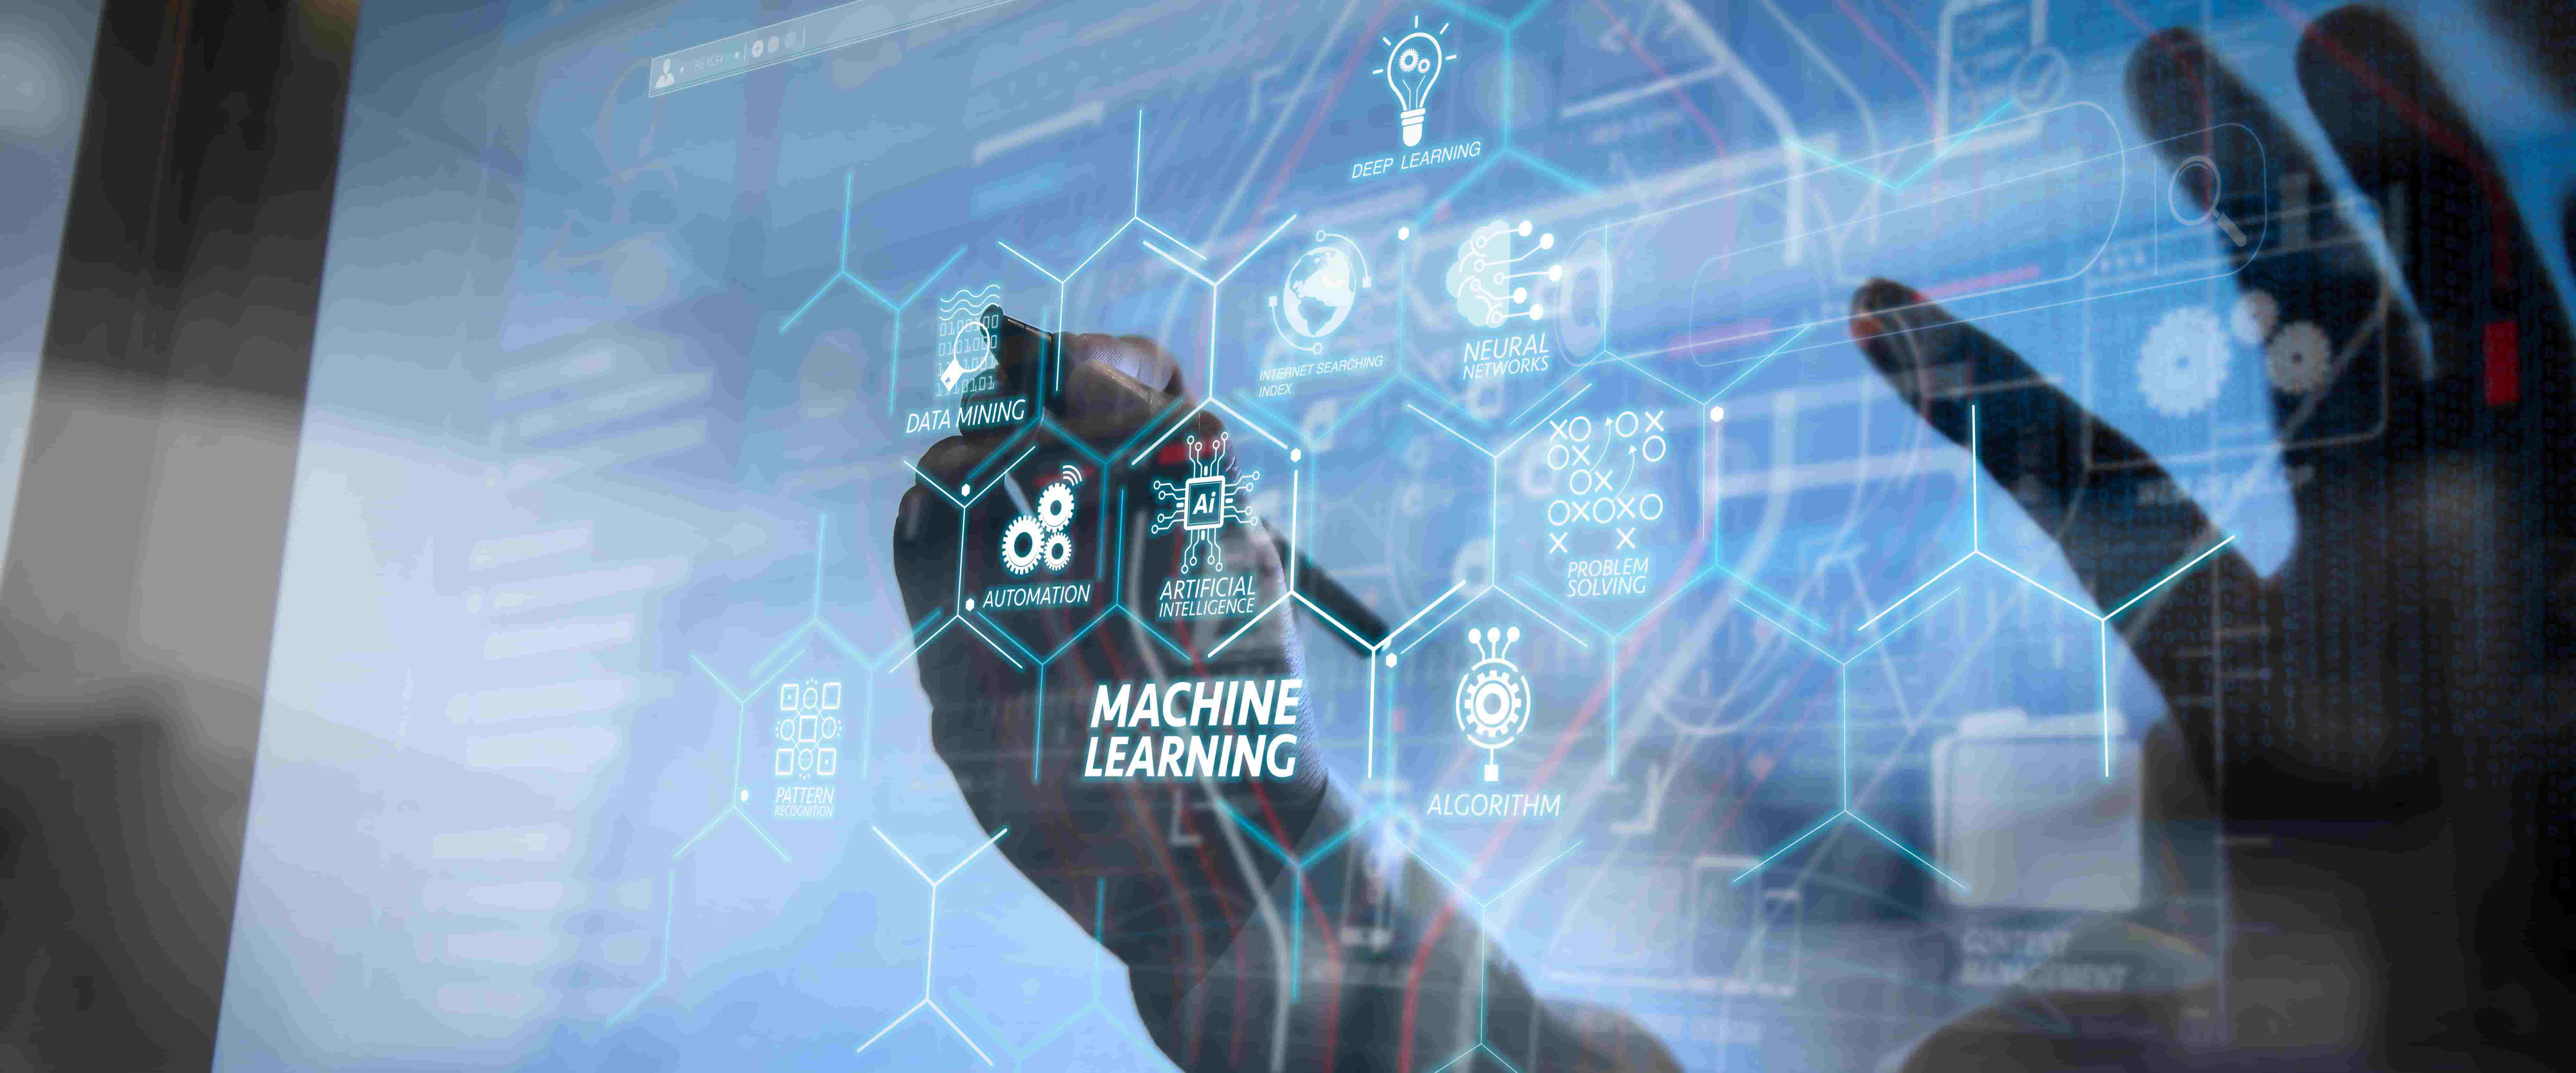 图片展示一只手触摸着充满图标和英文术语的虚拟屏幕，中心写着“机器学习”，体现现代科技与人机交互。